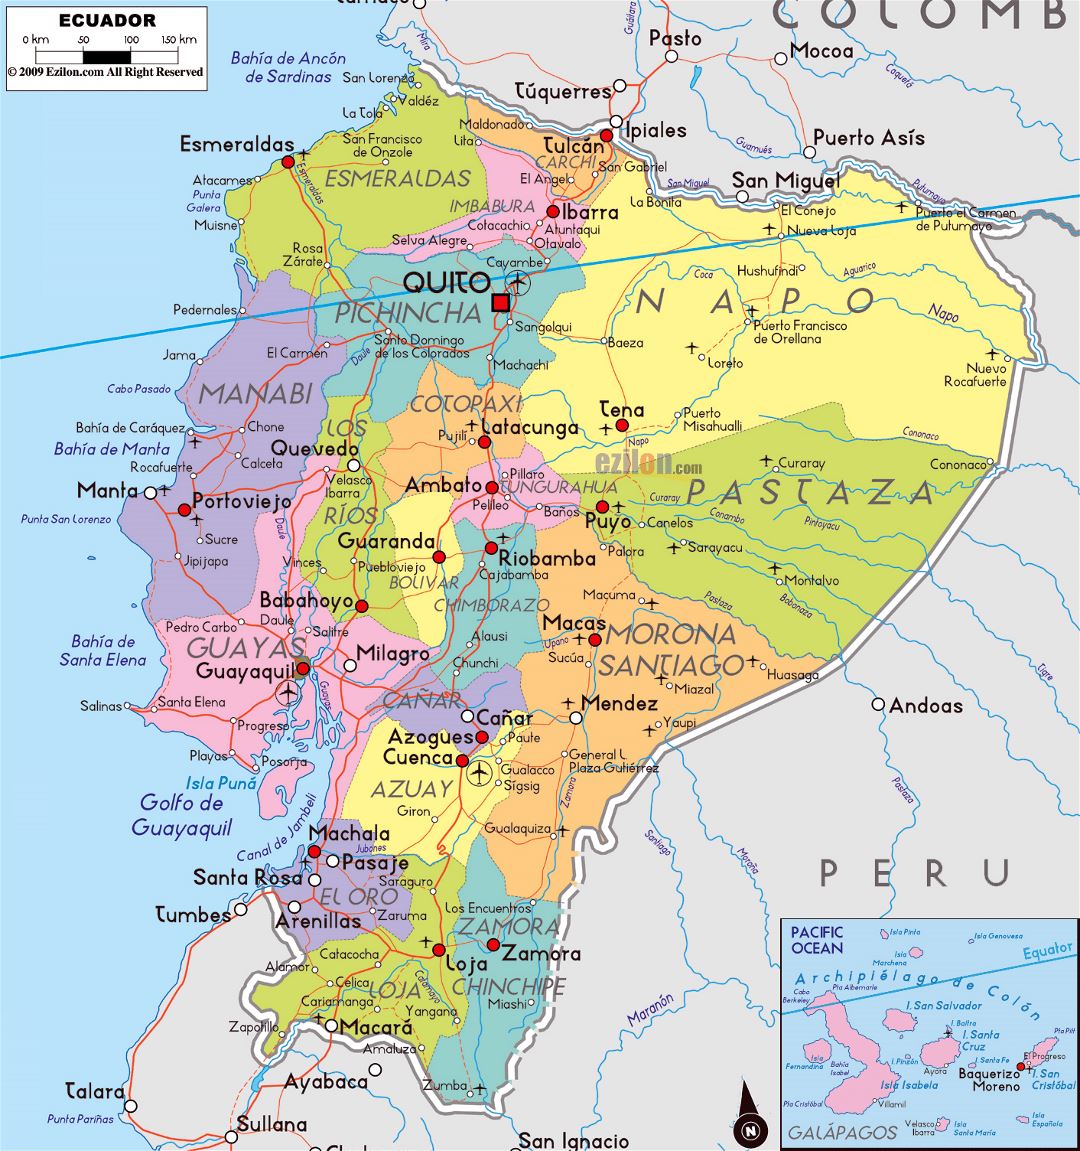 Большая политическая и административная карта Эквадора с дорогами, городами и аэропортами